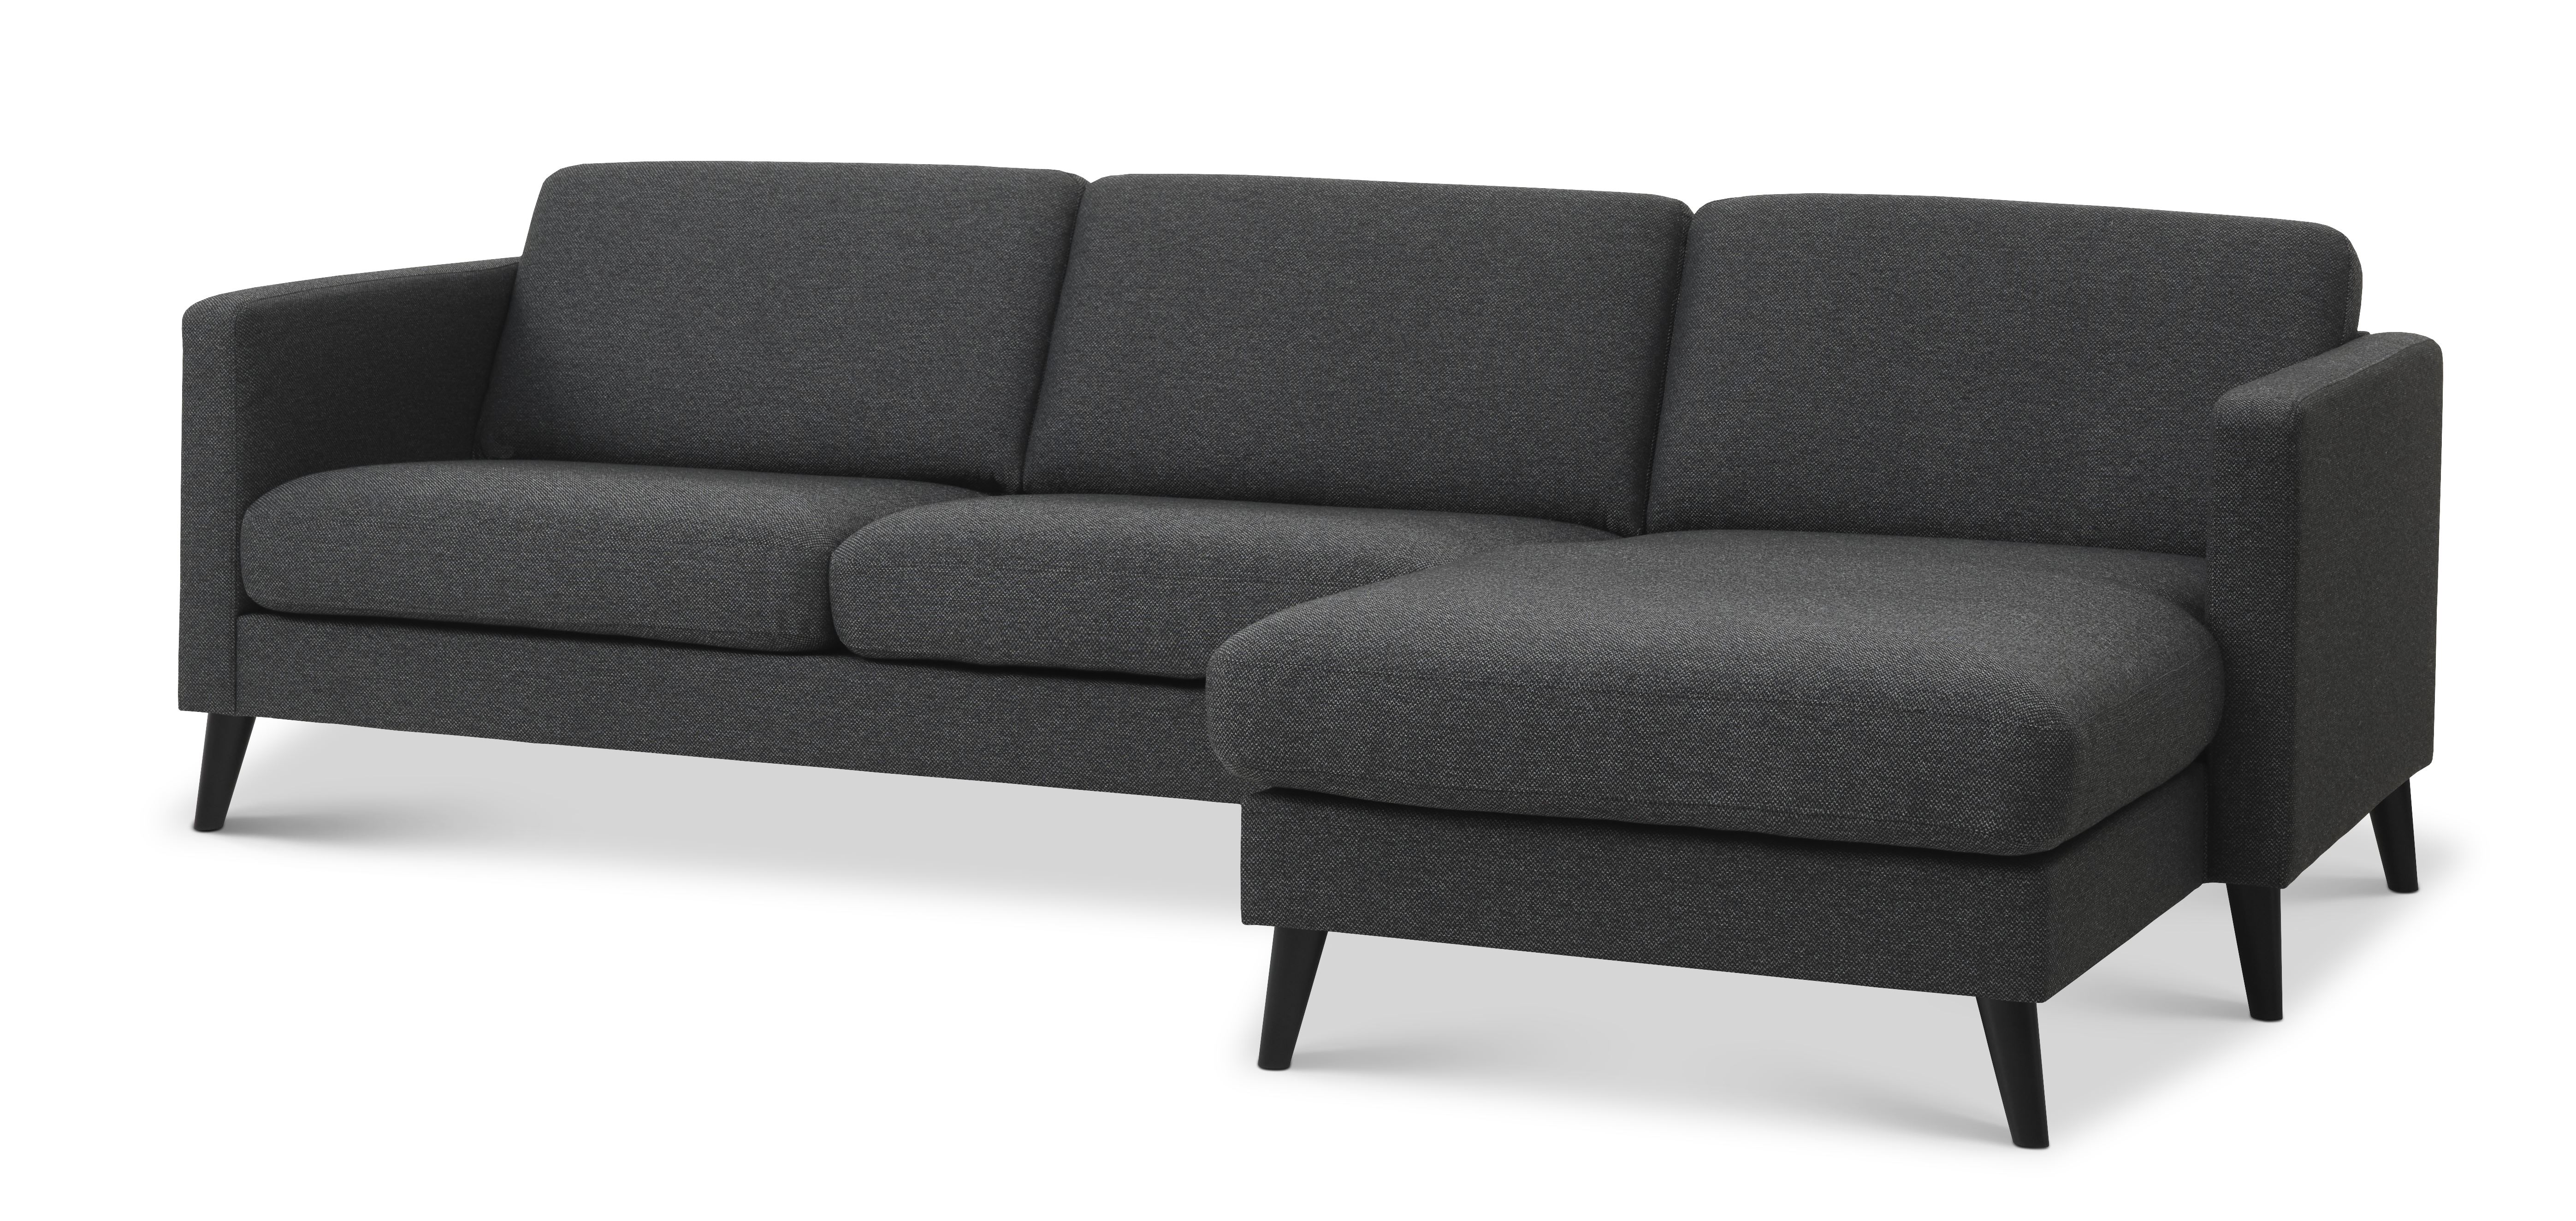 Ask sæt 51 3D sofa, m. chaiselong - antracitgrå polyester stof og sort træ